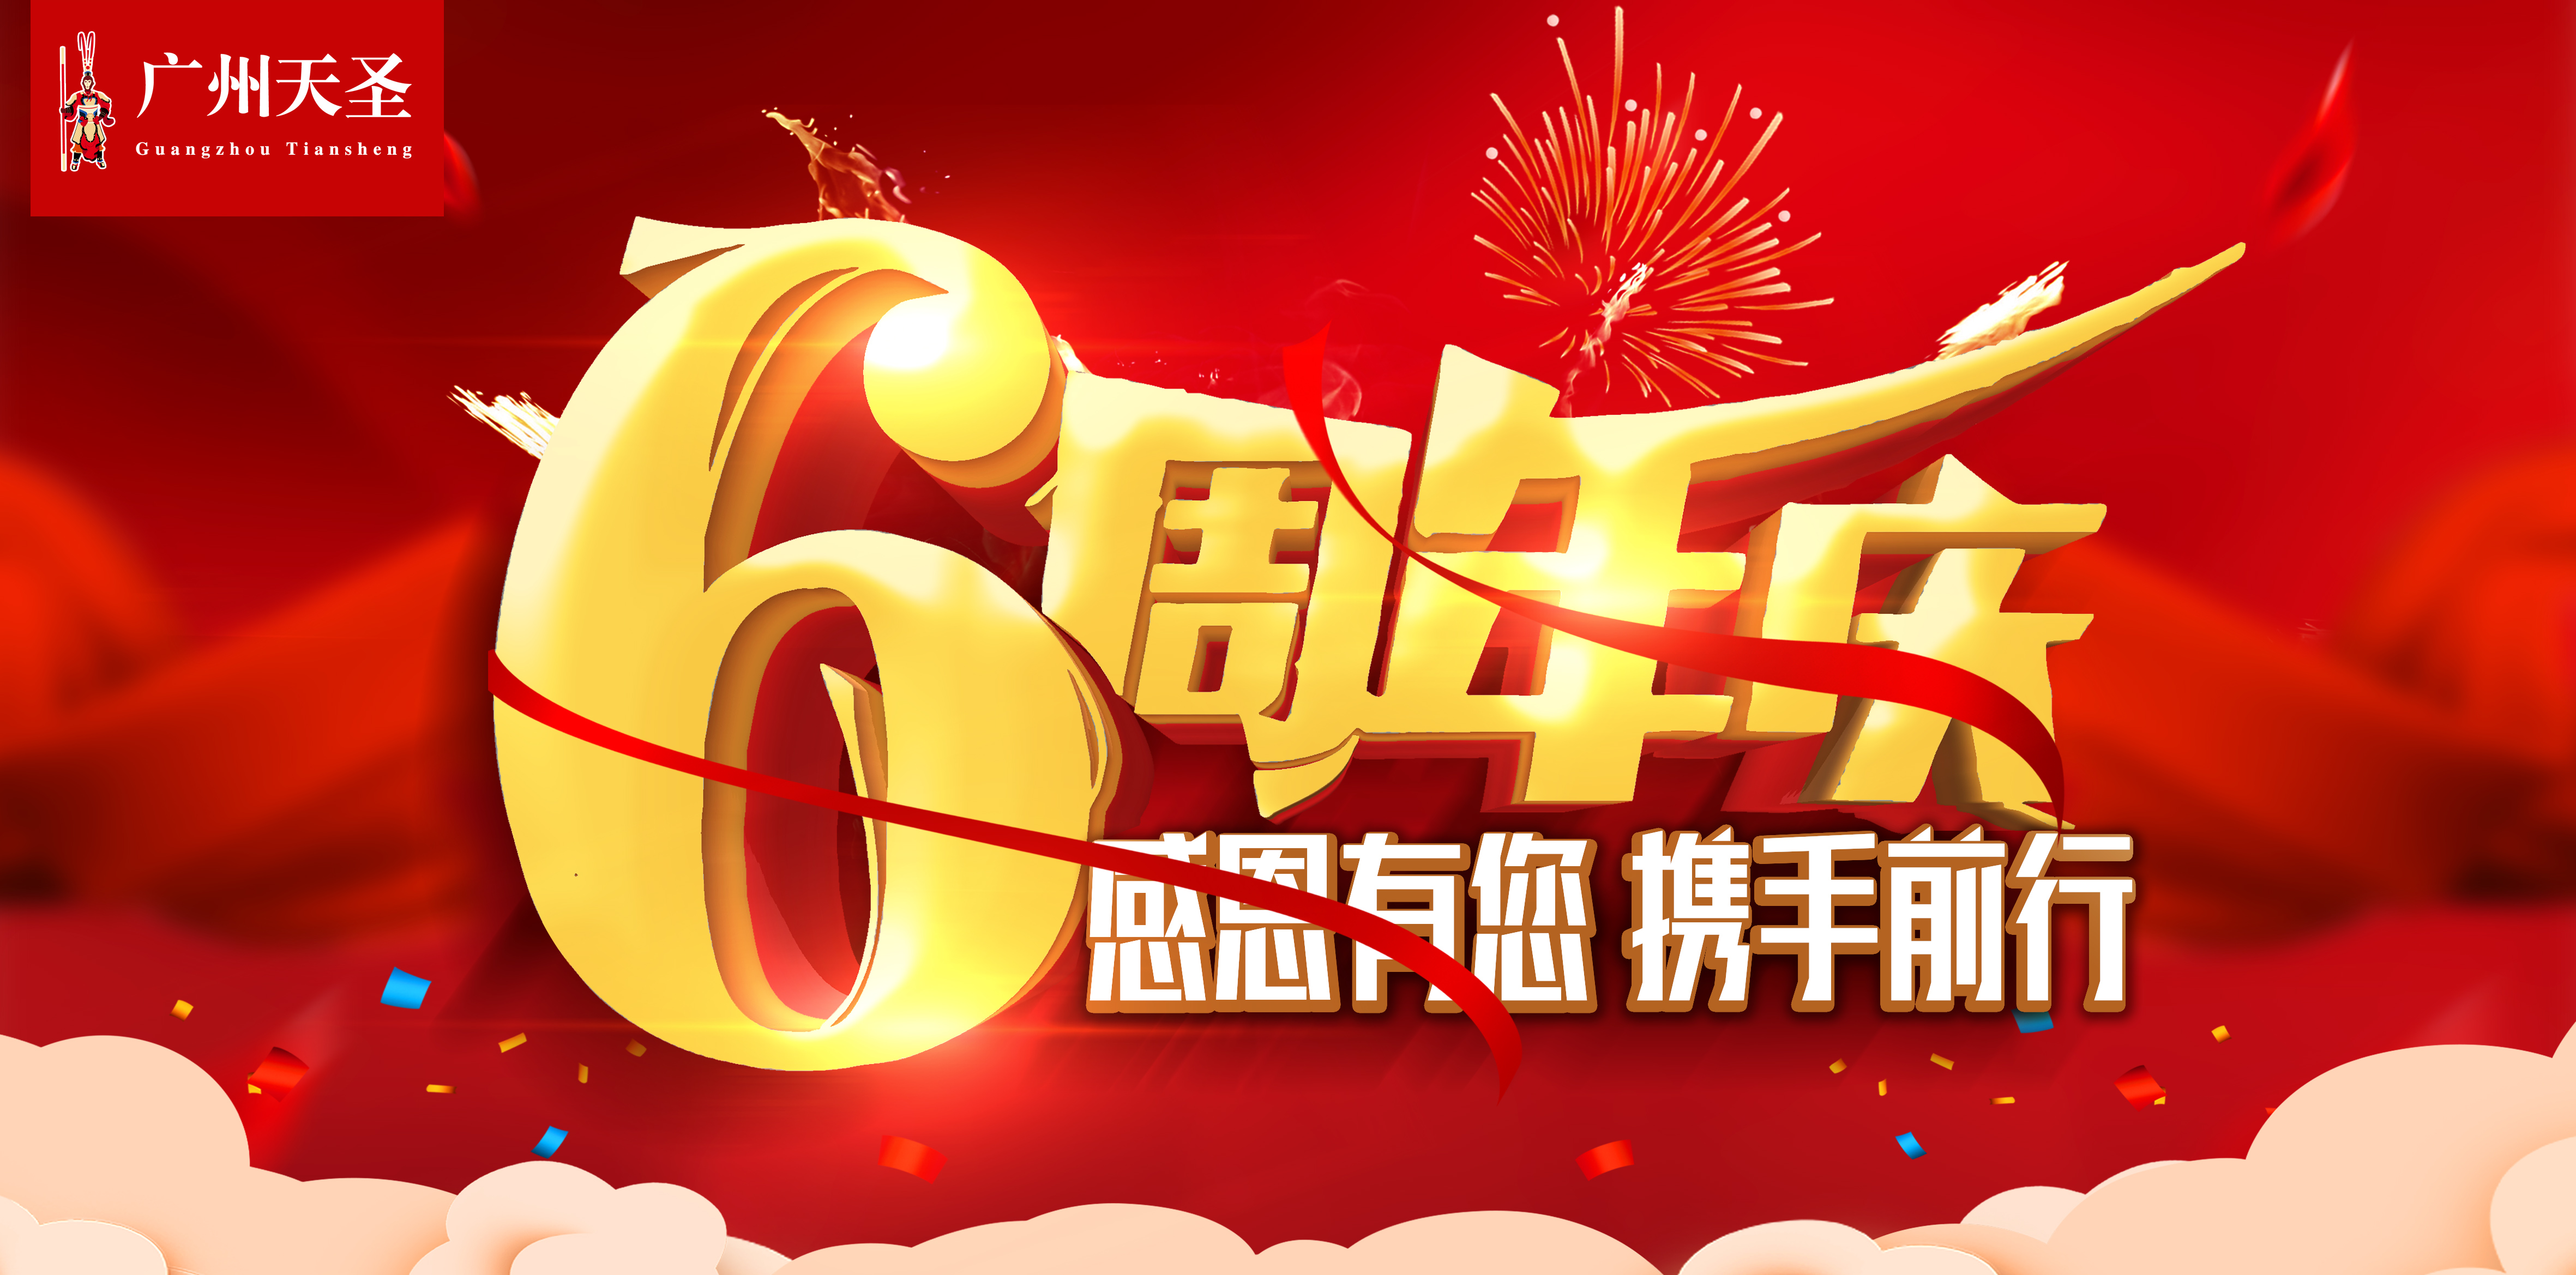 热烈祝贺广州天圣六周年庆典圆满落幕！